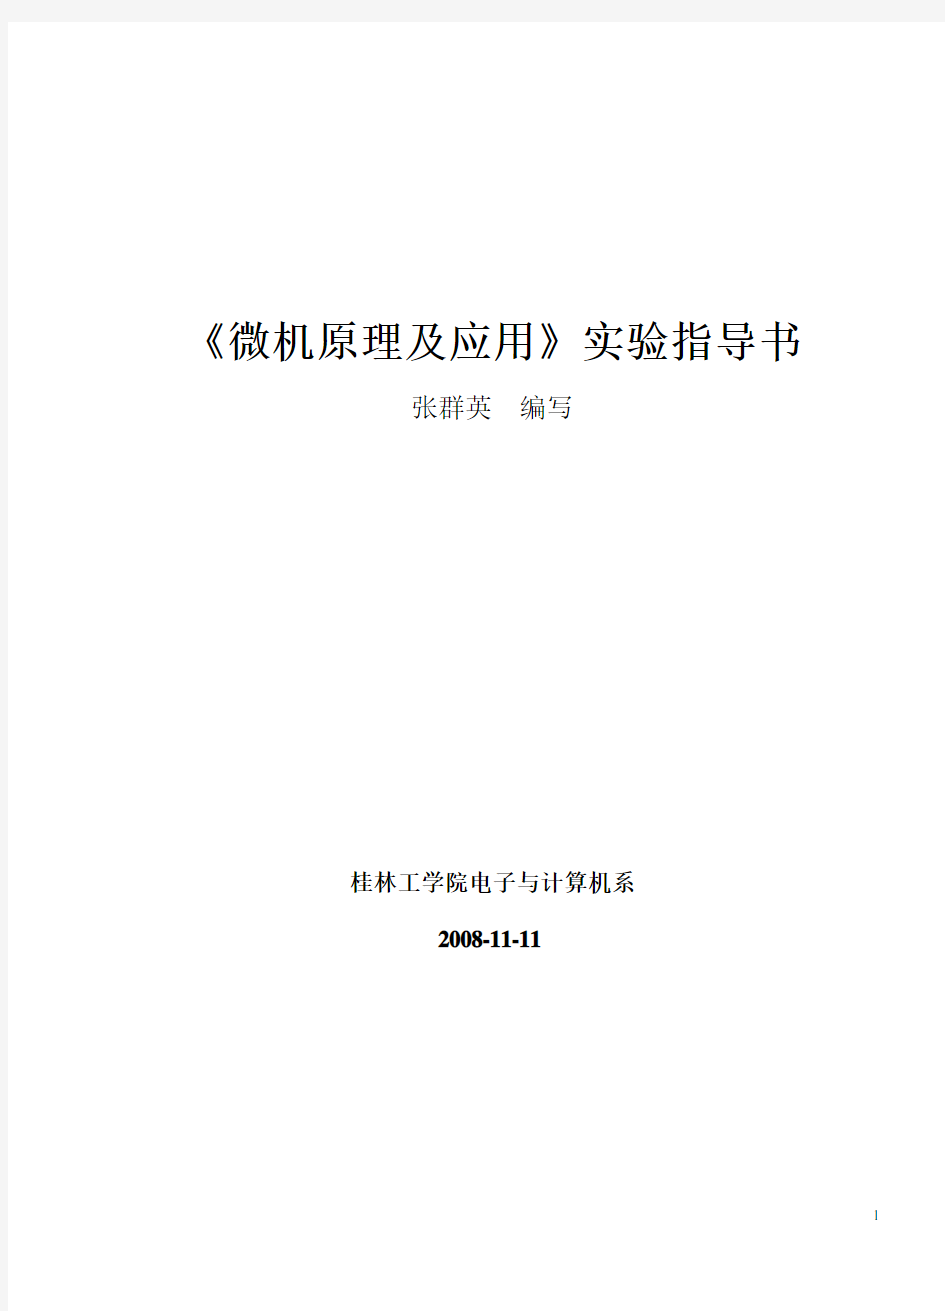 微机原理实验指导书(2008-11-11)